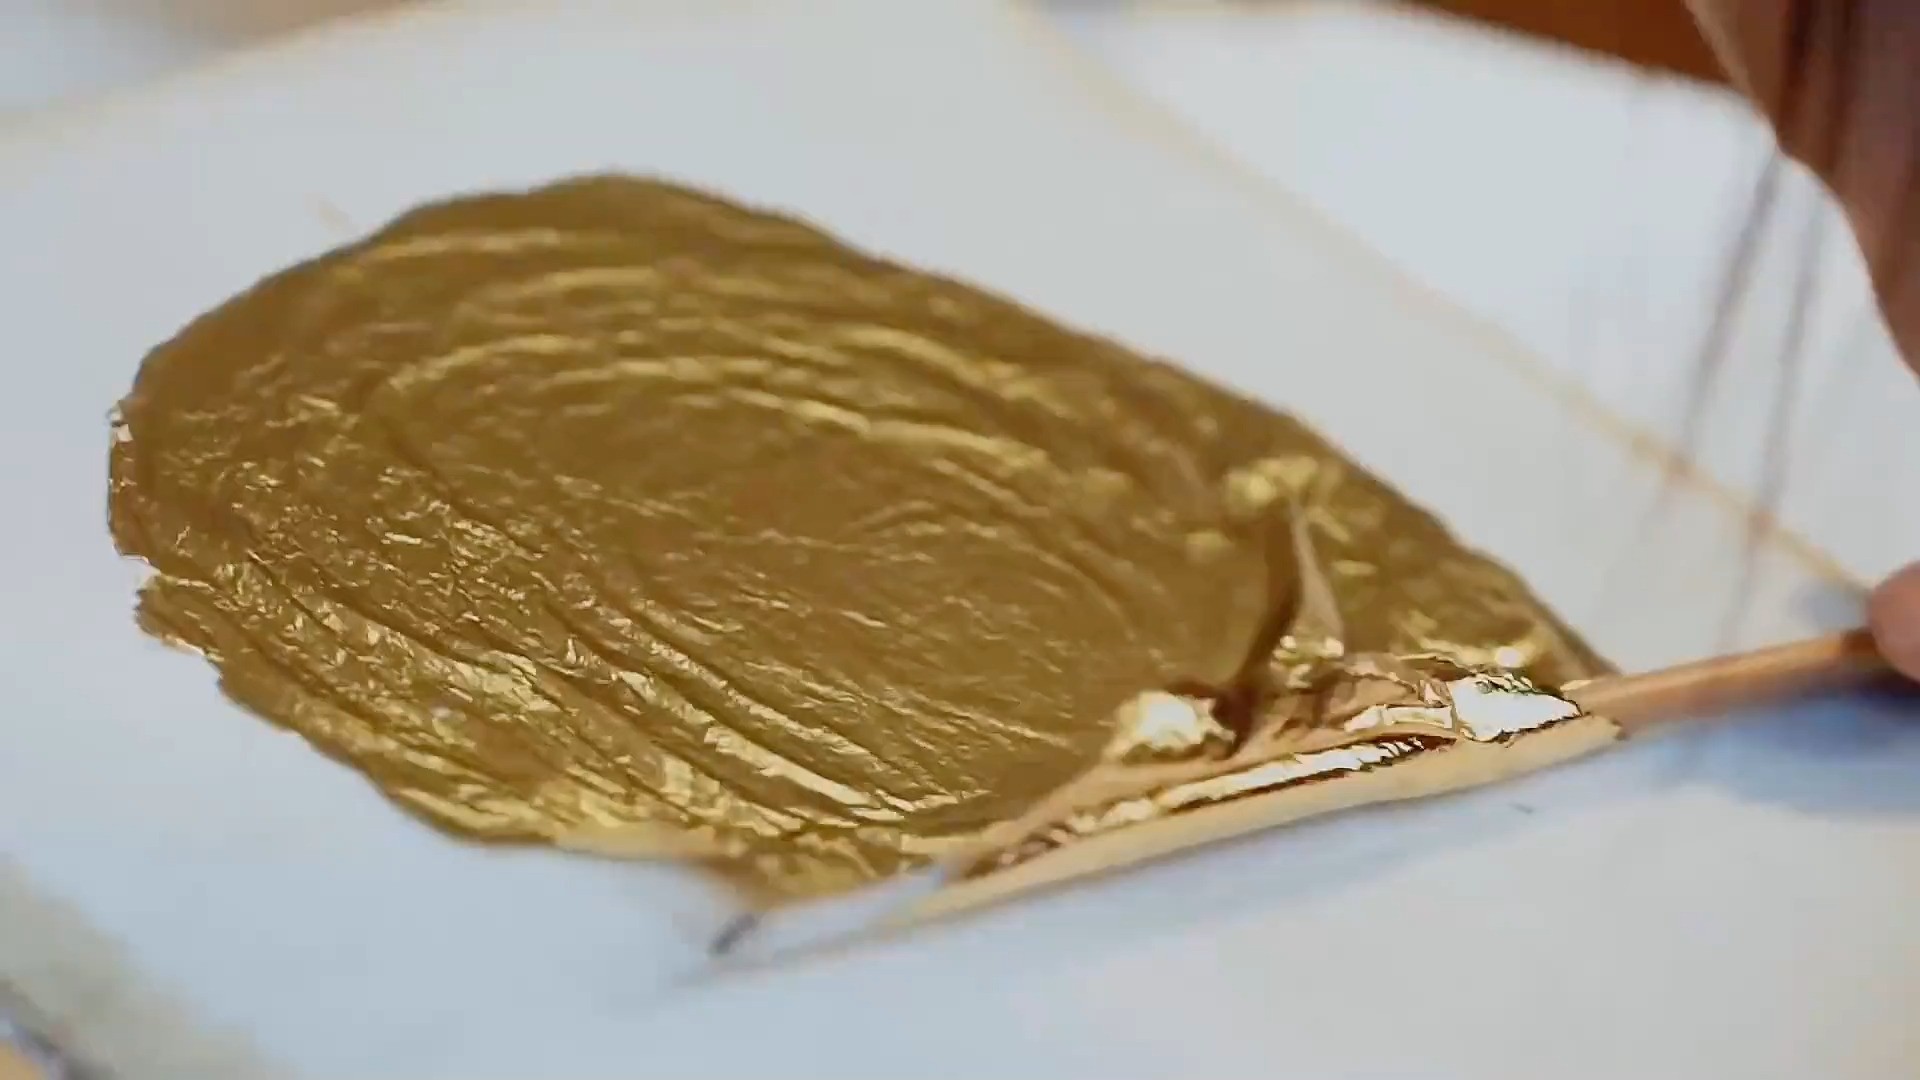 金箔是黄金做的吗？0.1微米厚的金箔需要经历3万多次的捶打 #金箔 #匠人精神 #传统手艺 #非遗传承 .mp4

